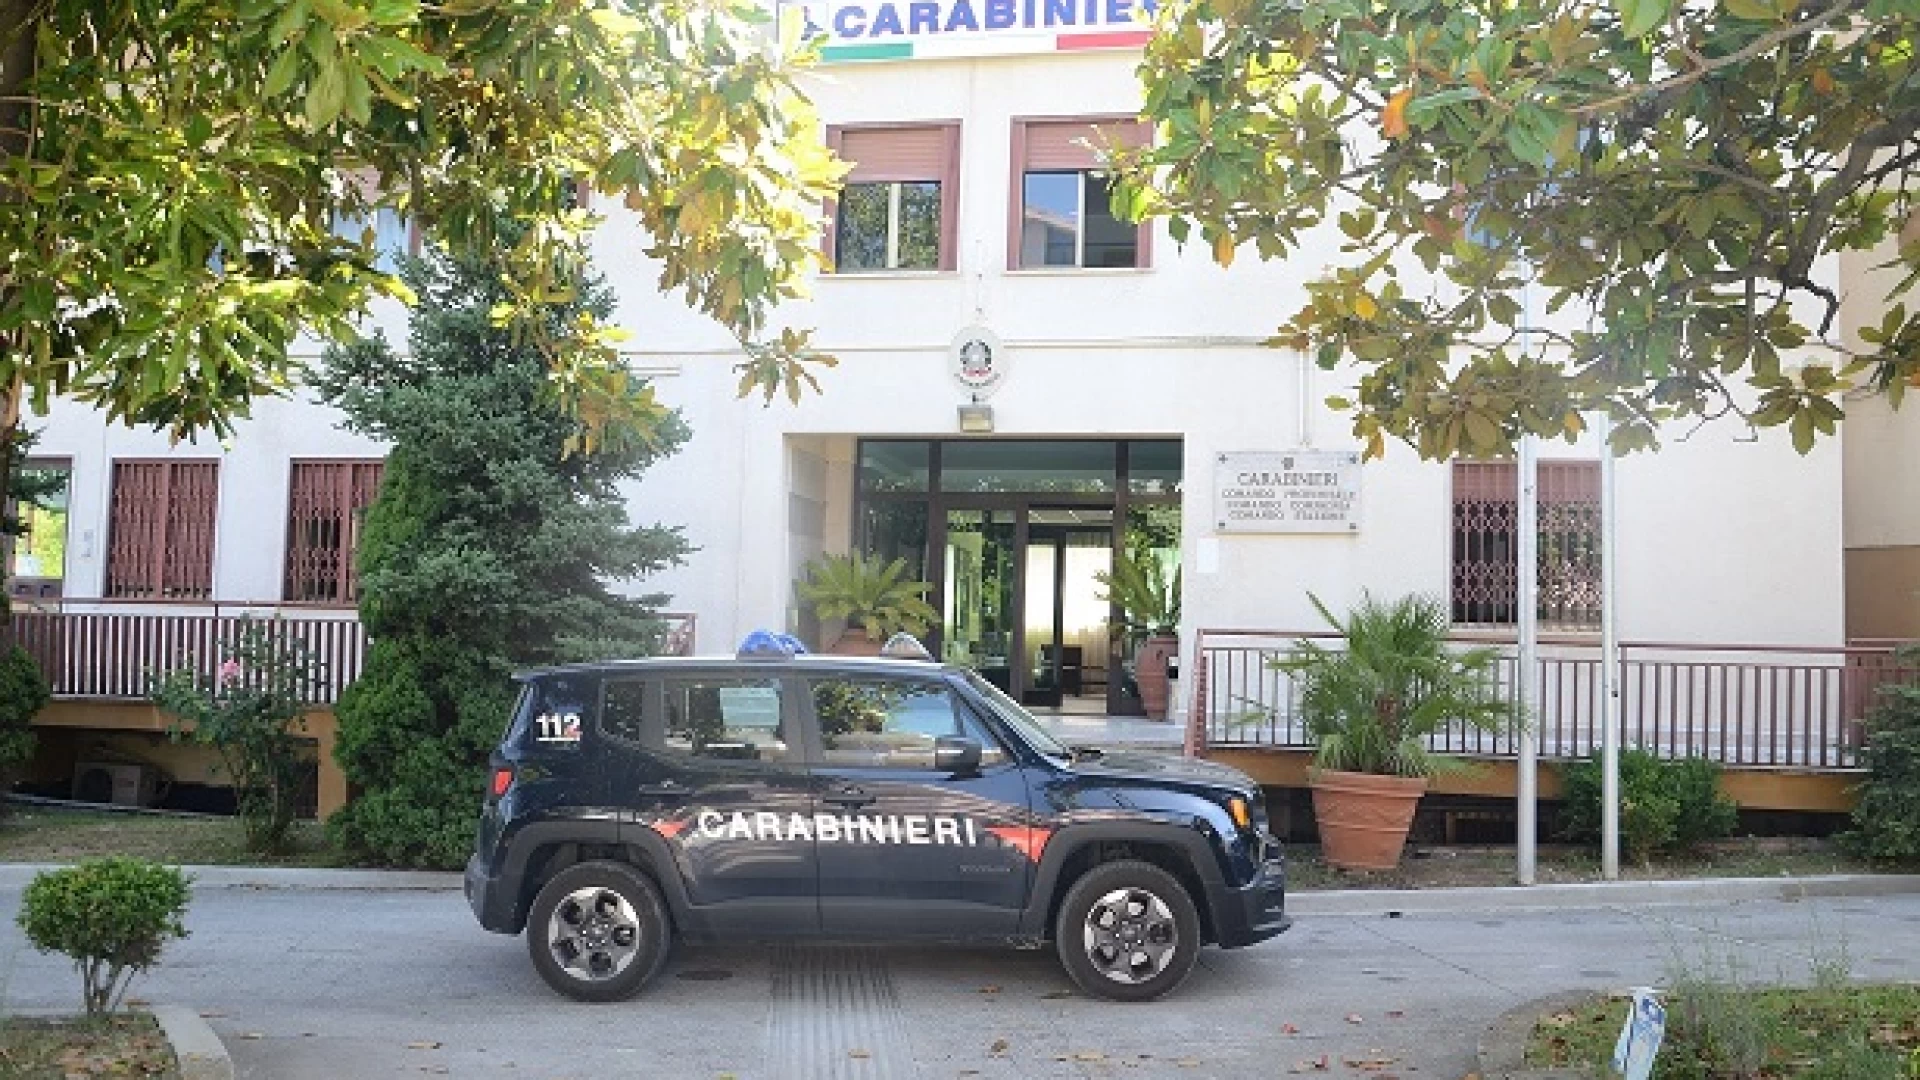 Isernia: Carabinieri e Polizia arrestano soggetto che aveva tentato di effettuare acquisti con carta di credito rubata.